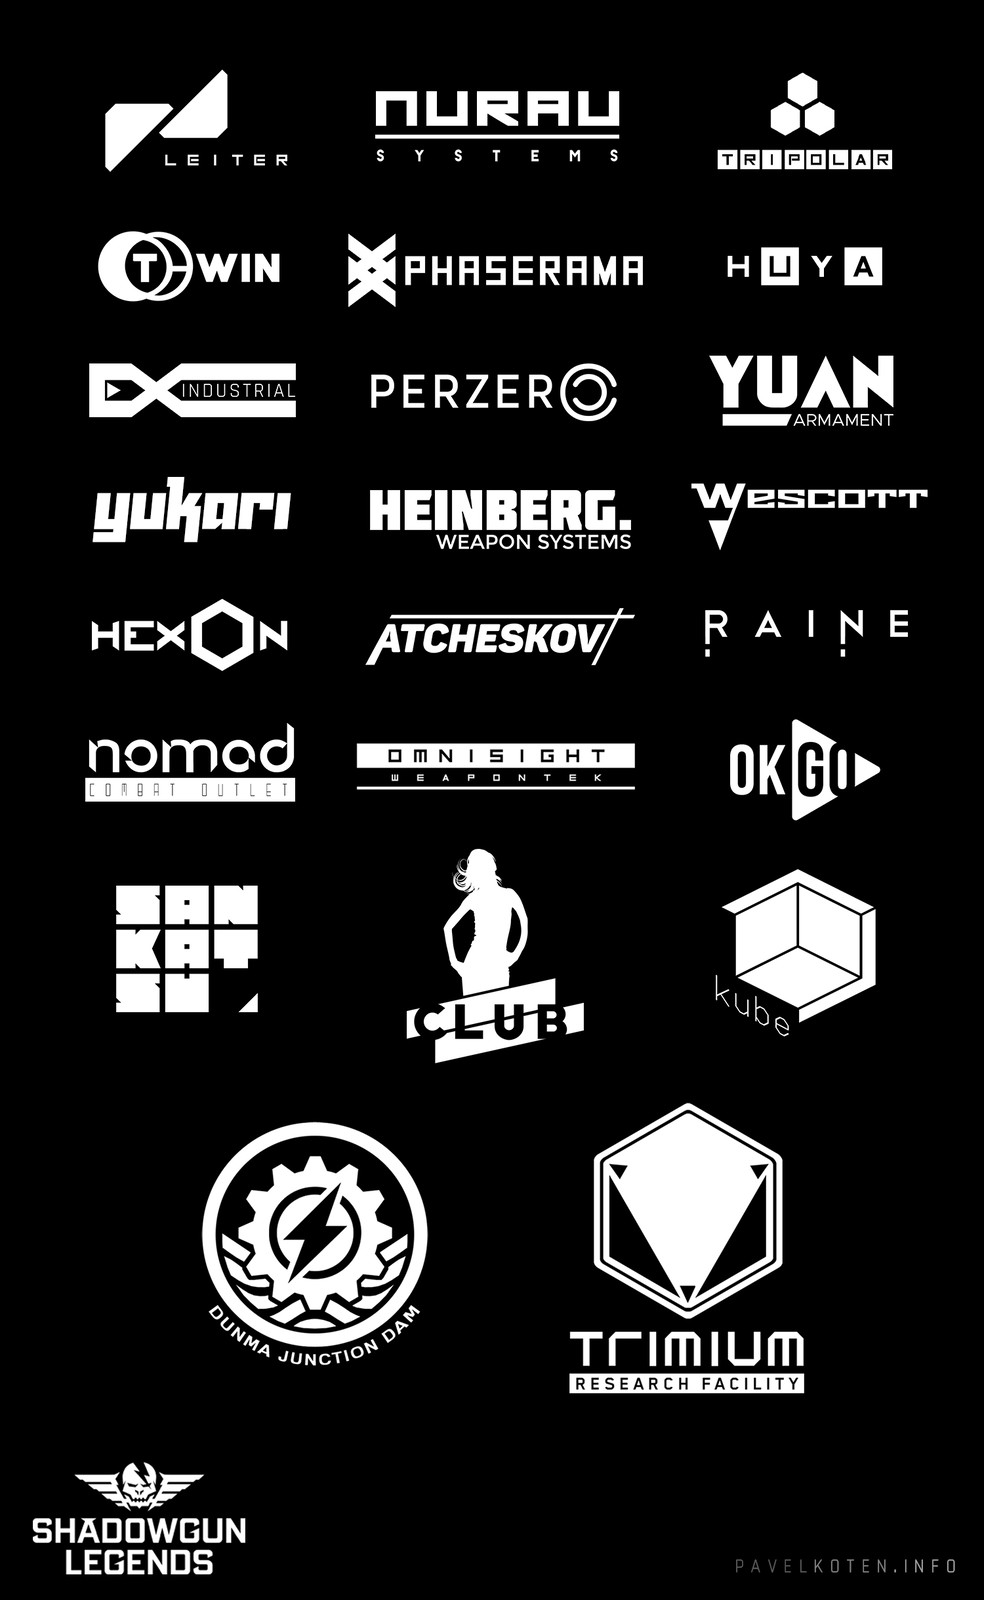 In-game logos &amp; branding.